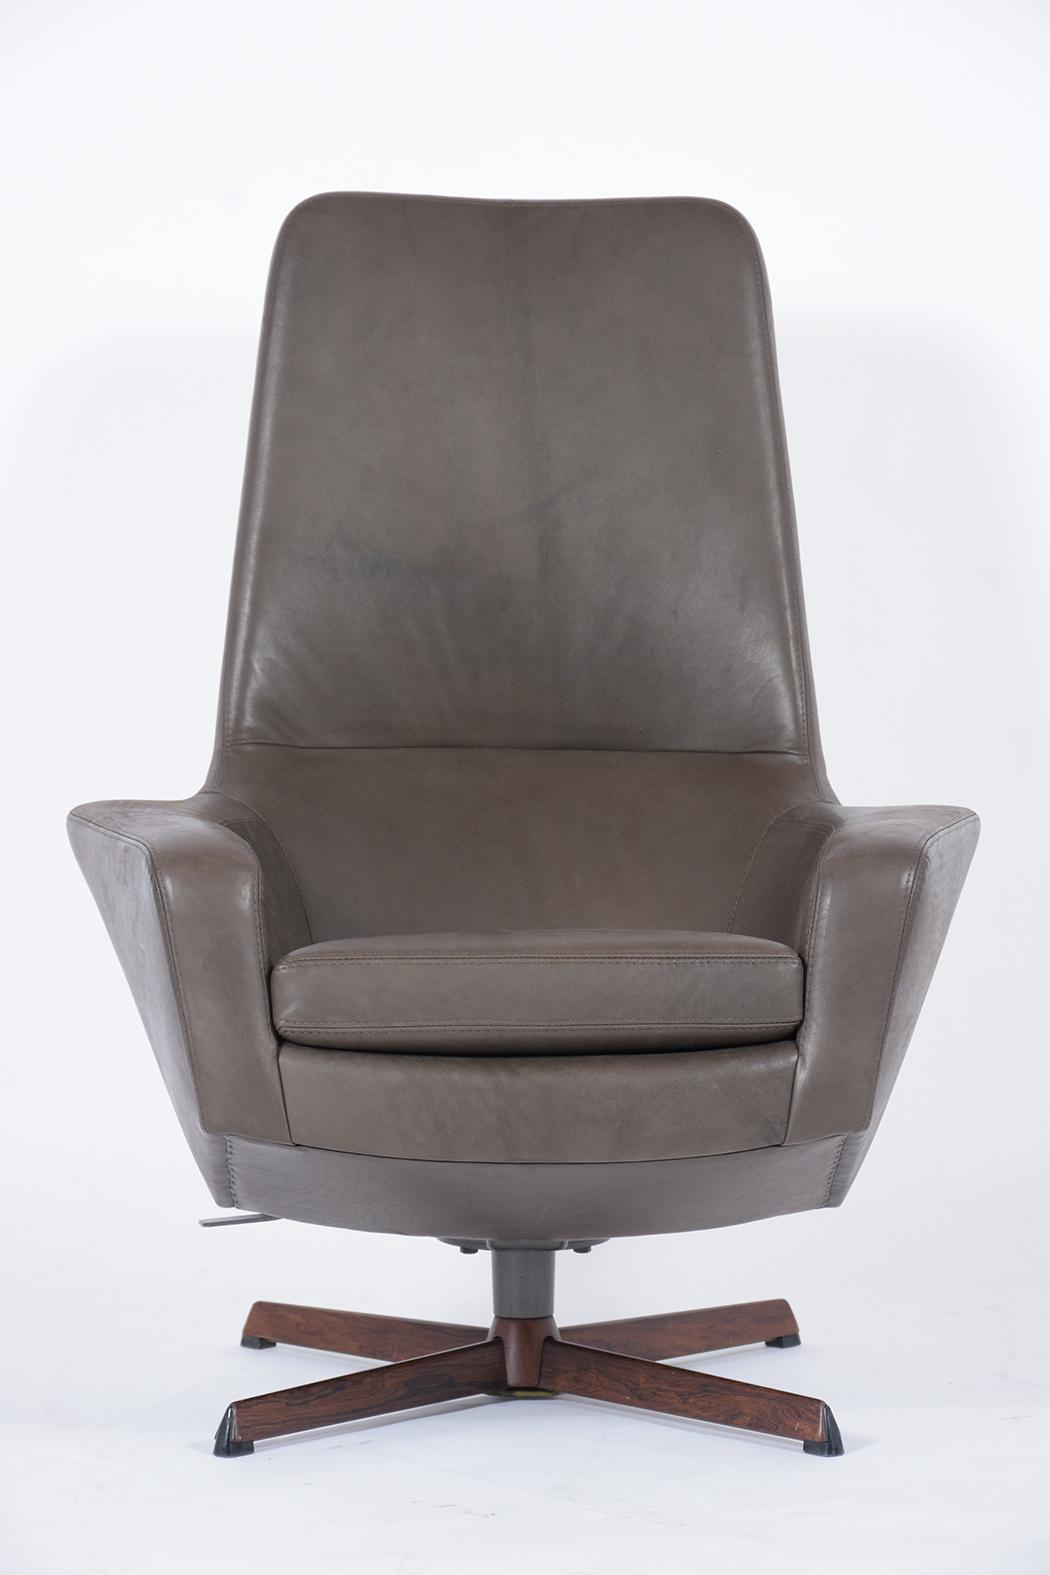 Kofod Larsen Lounge Chair and Ottoman